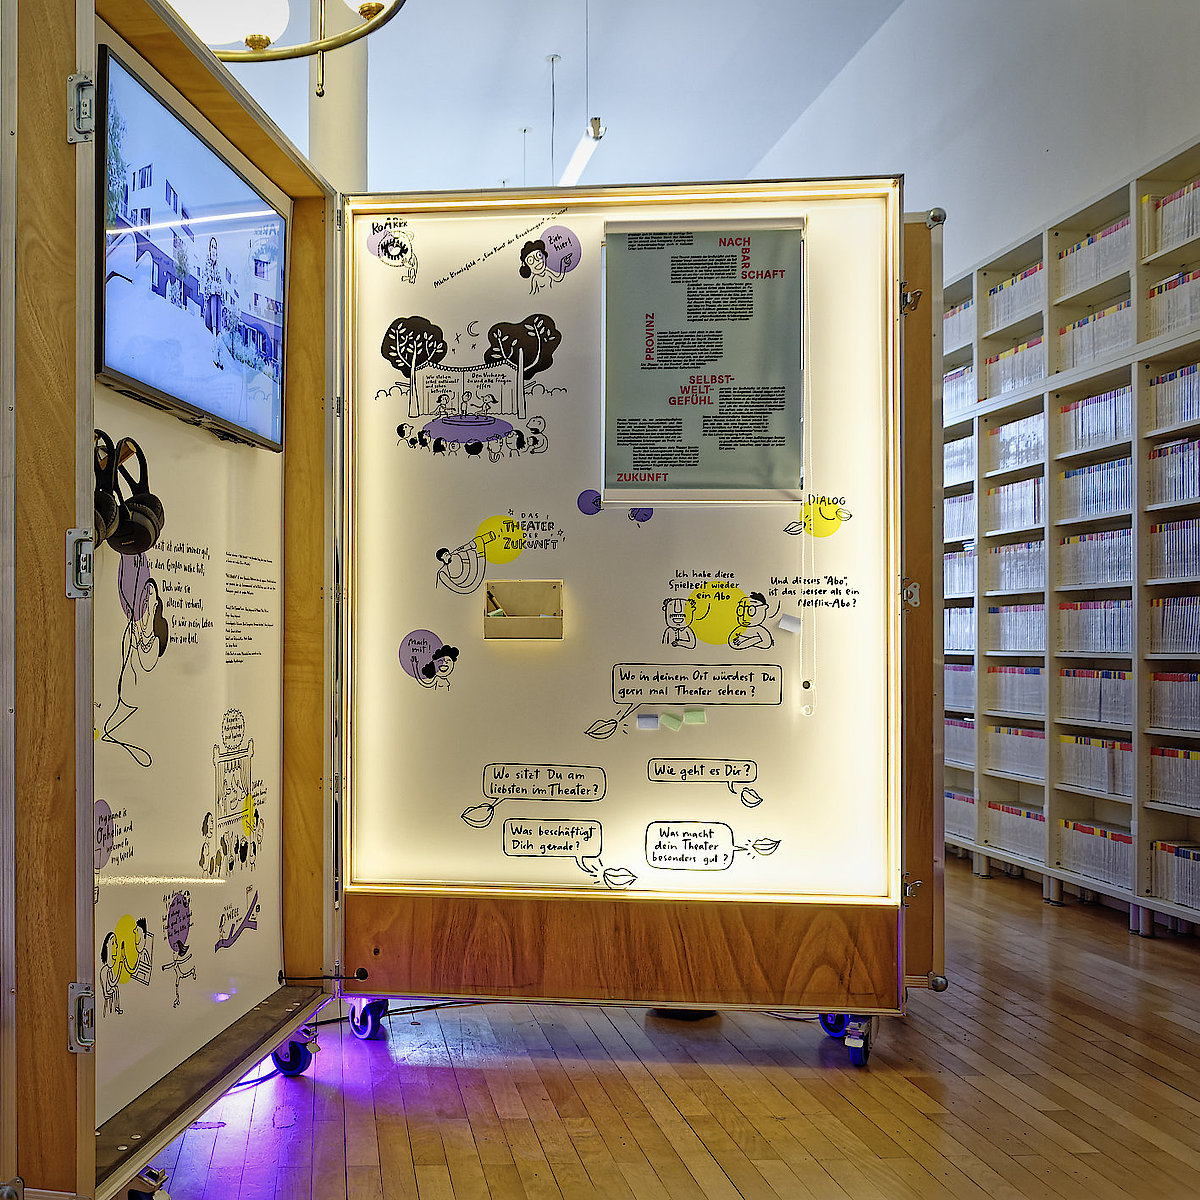 Das Bild zeigt das aufklappbare Box-Format der Wanderausstellung in der Mediathek für Tanz und Theater. Die Box steht offen und zwei Innenwände sind zu sehen, darauf Illustrationen, Texte und ein Bildschirm, der ein Video abspielt.